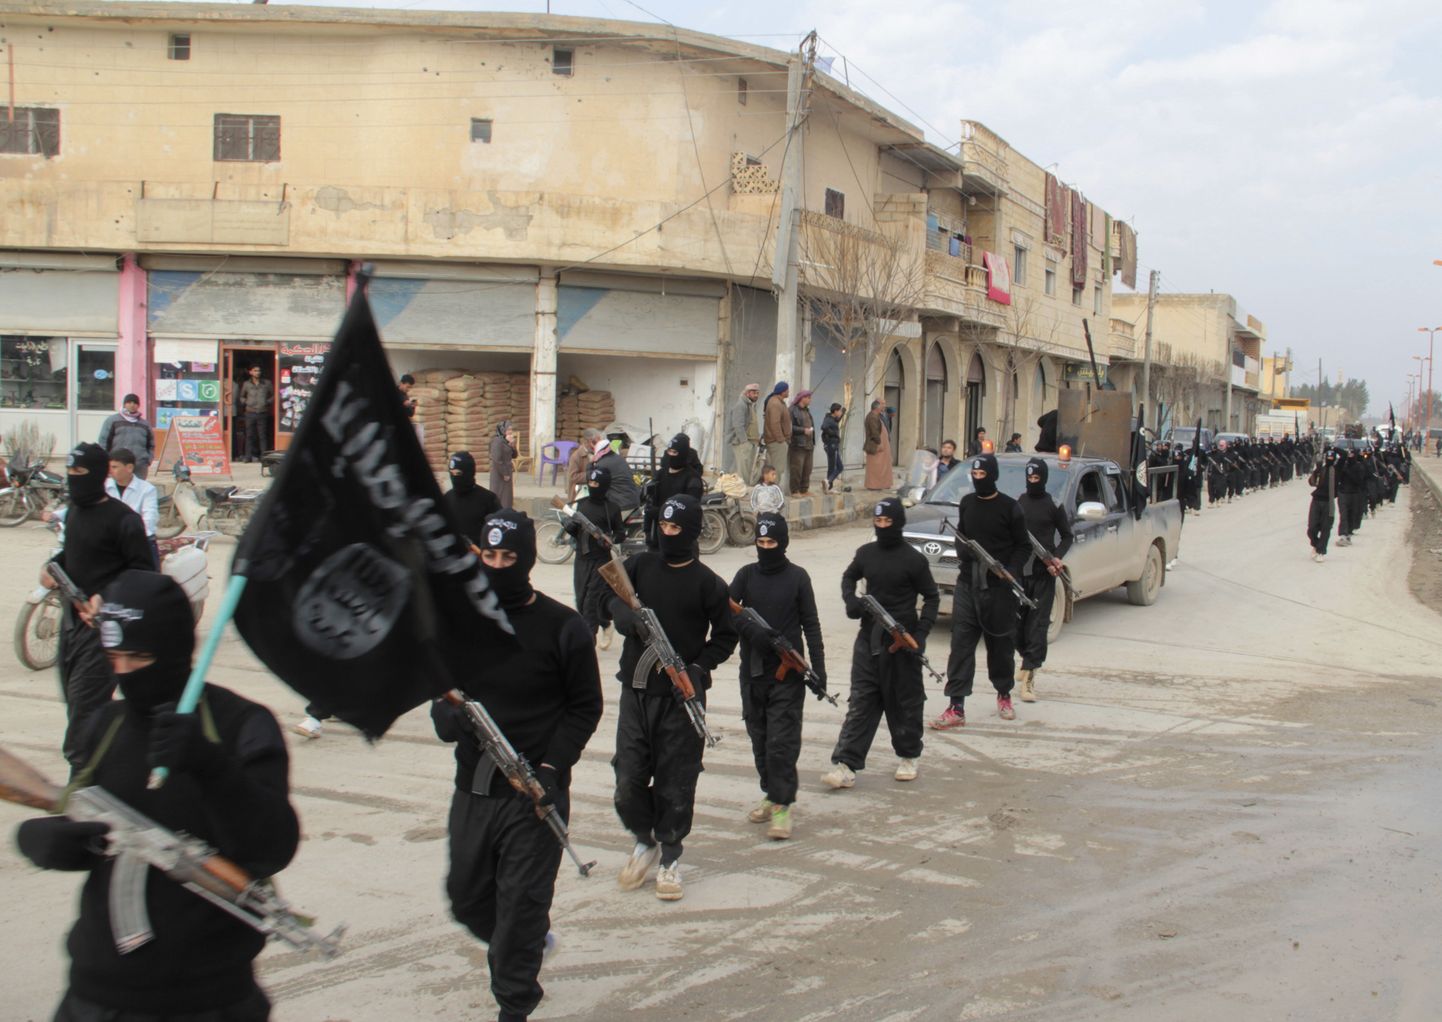 Islamiriigi sõdurid marssimas 2014. aastal. Eksperdid hoiatavad, et Islamiriigi terroristlik tegevus võib selle aasta lõpul taas kasvada.